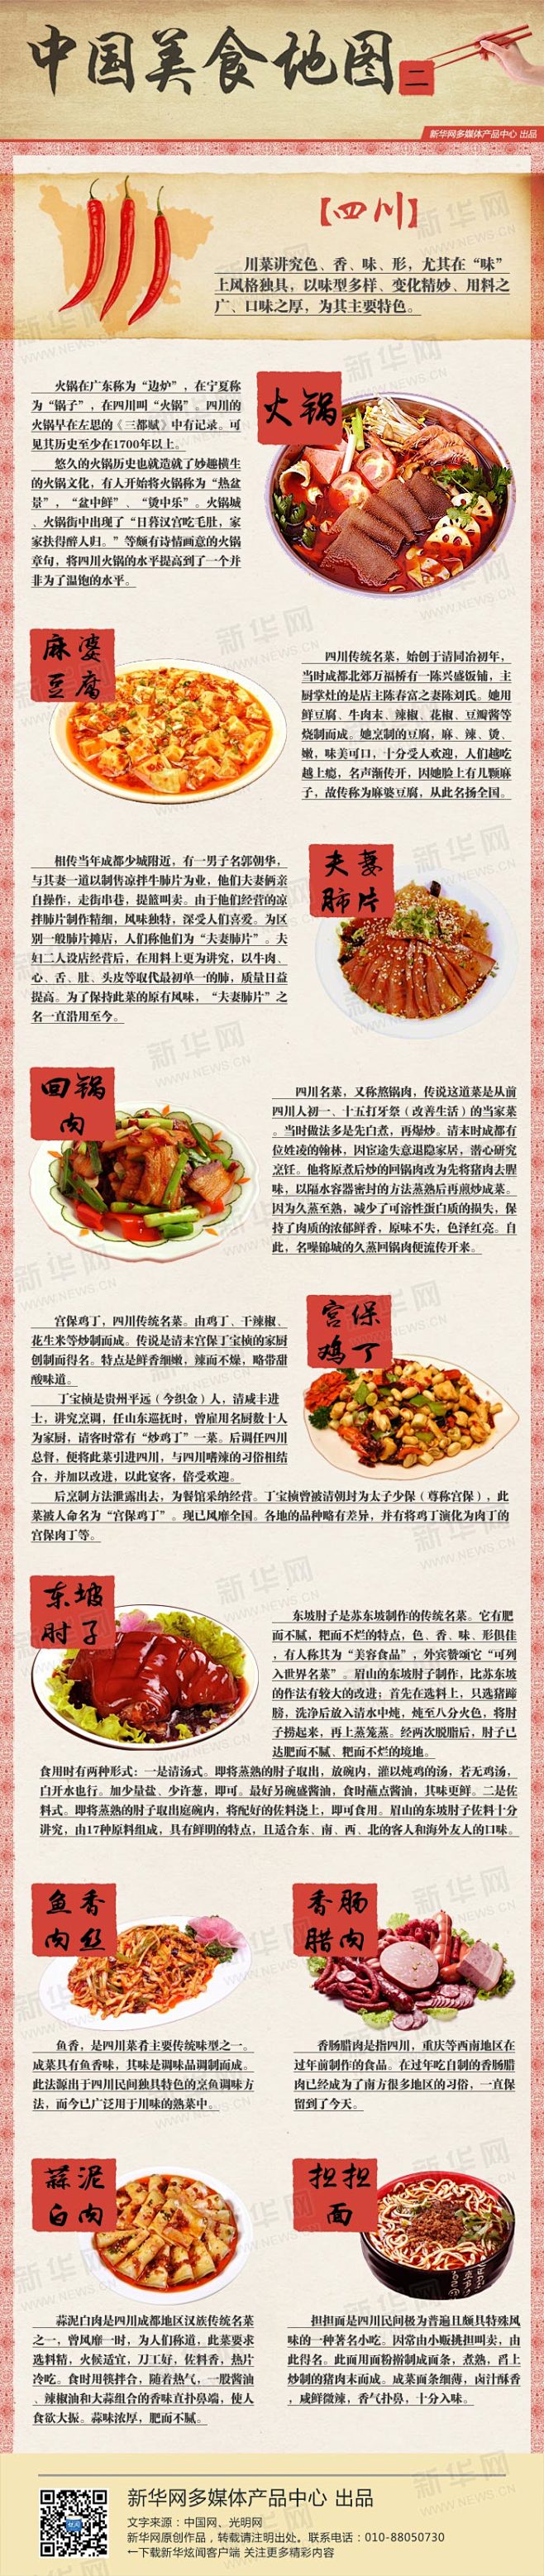 图说中国美食地图之四川
川菜是我国著名的...